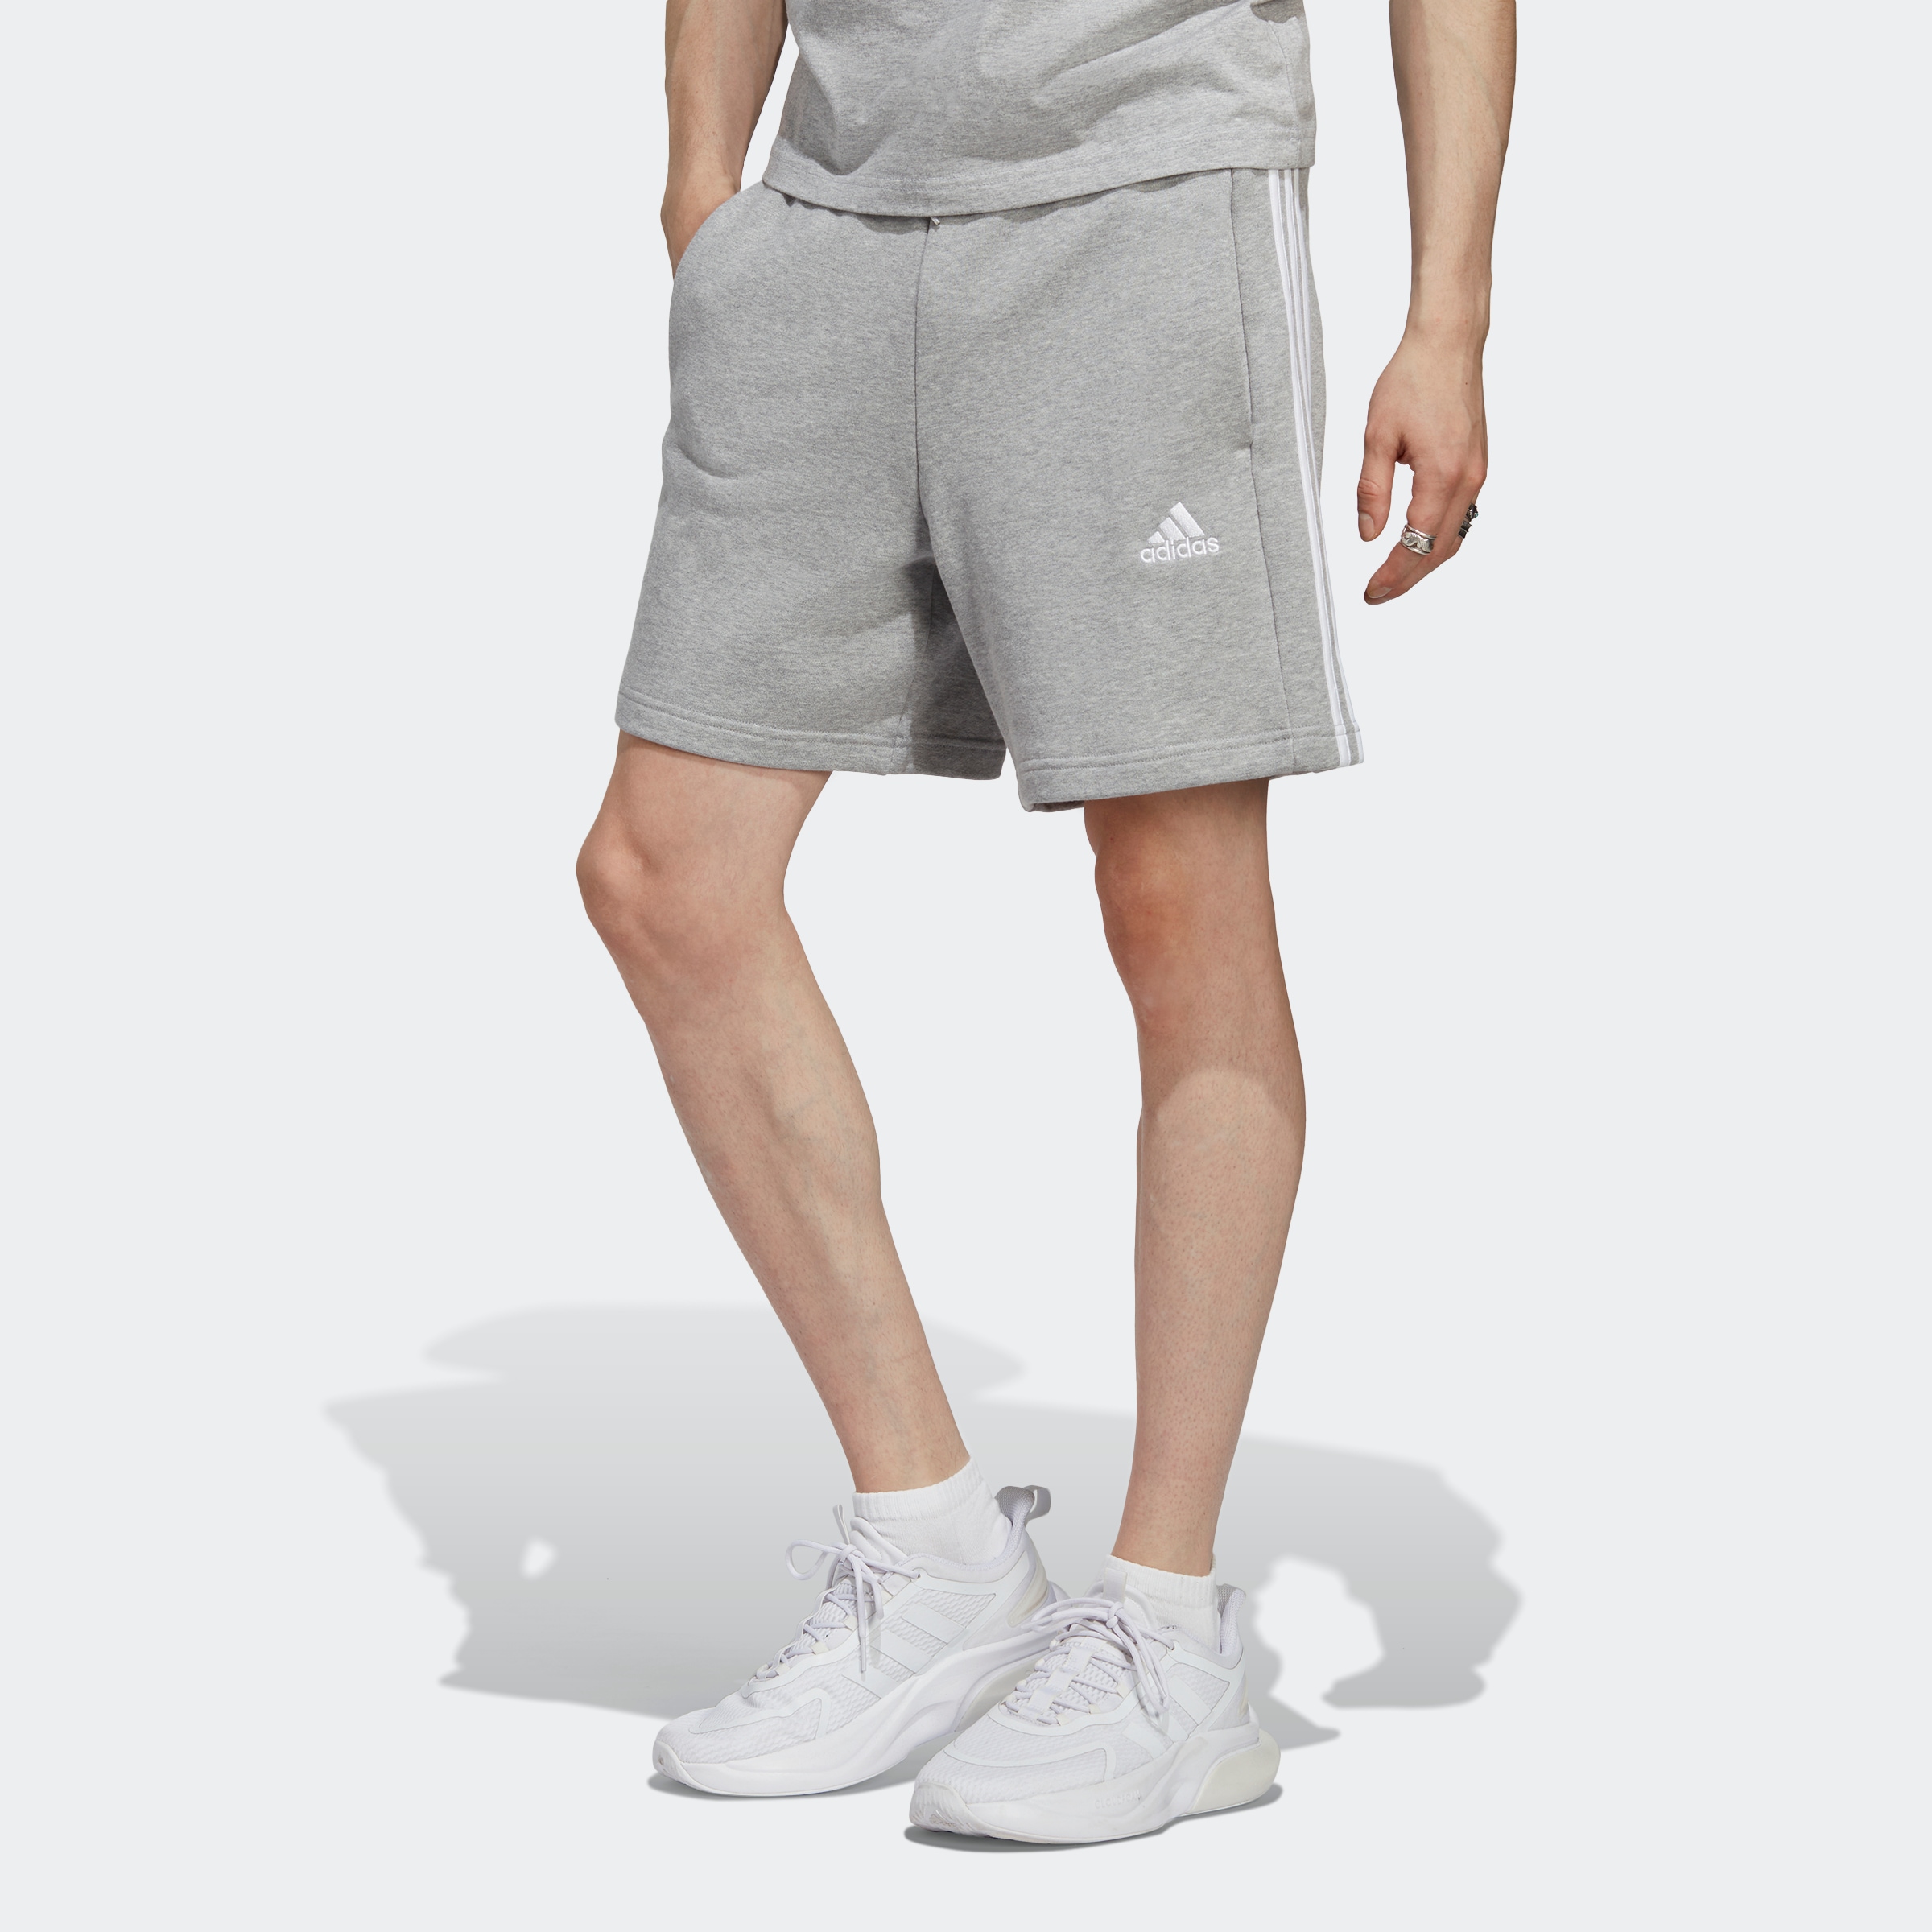 Herren-Shorts online kaufen | Shorts für Herren bei Ackermann